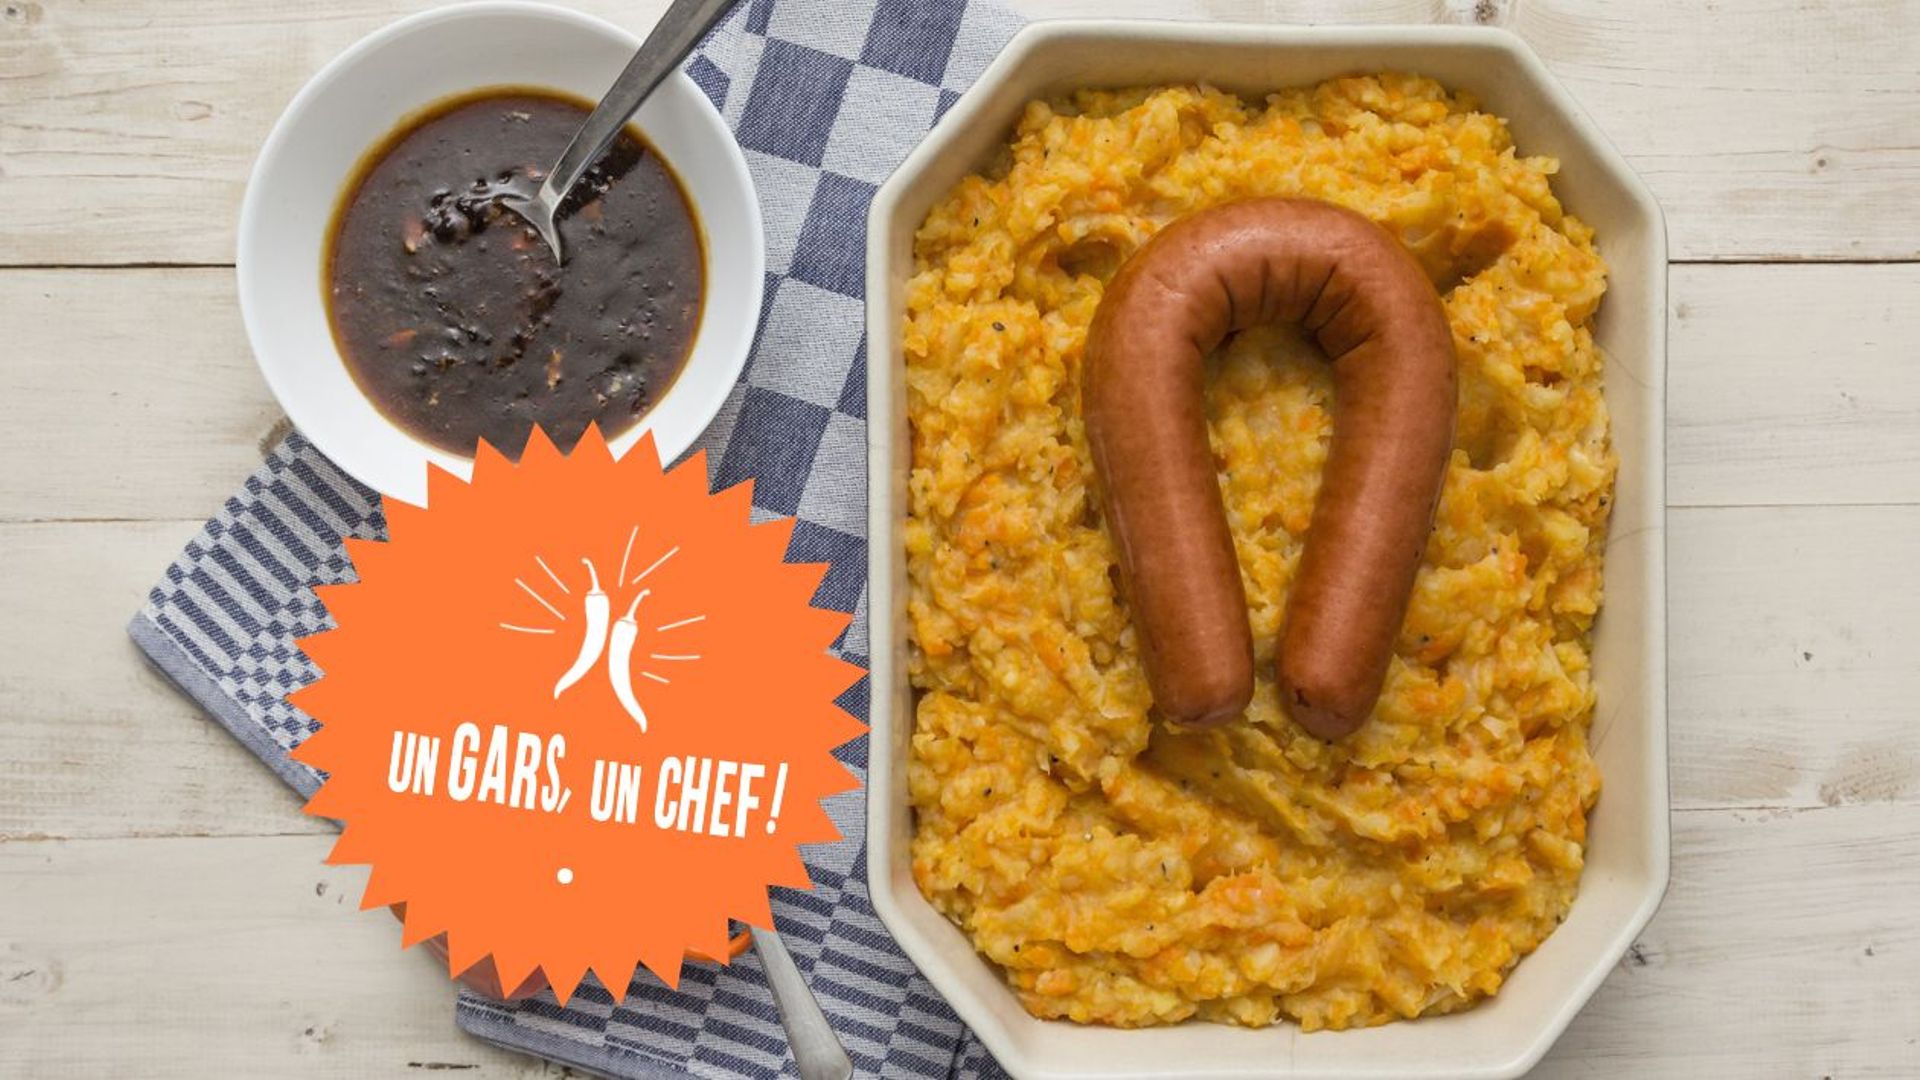 Recette : le stoemp aux carottes, saucisses et oeufs d'Un Gars, un Chef!